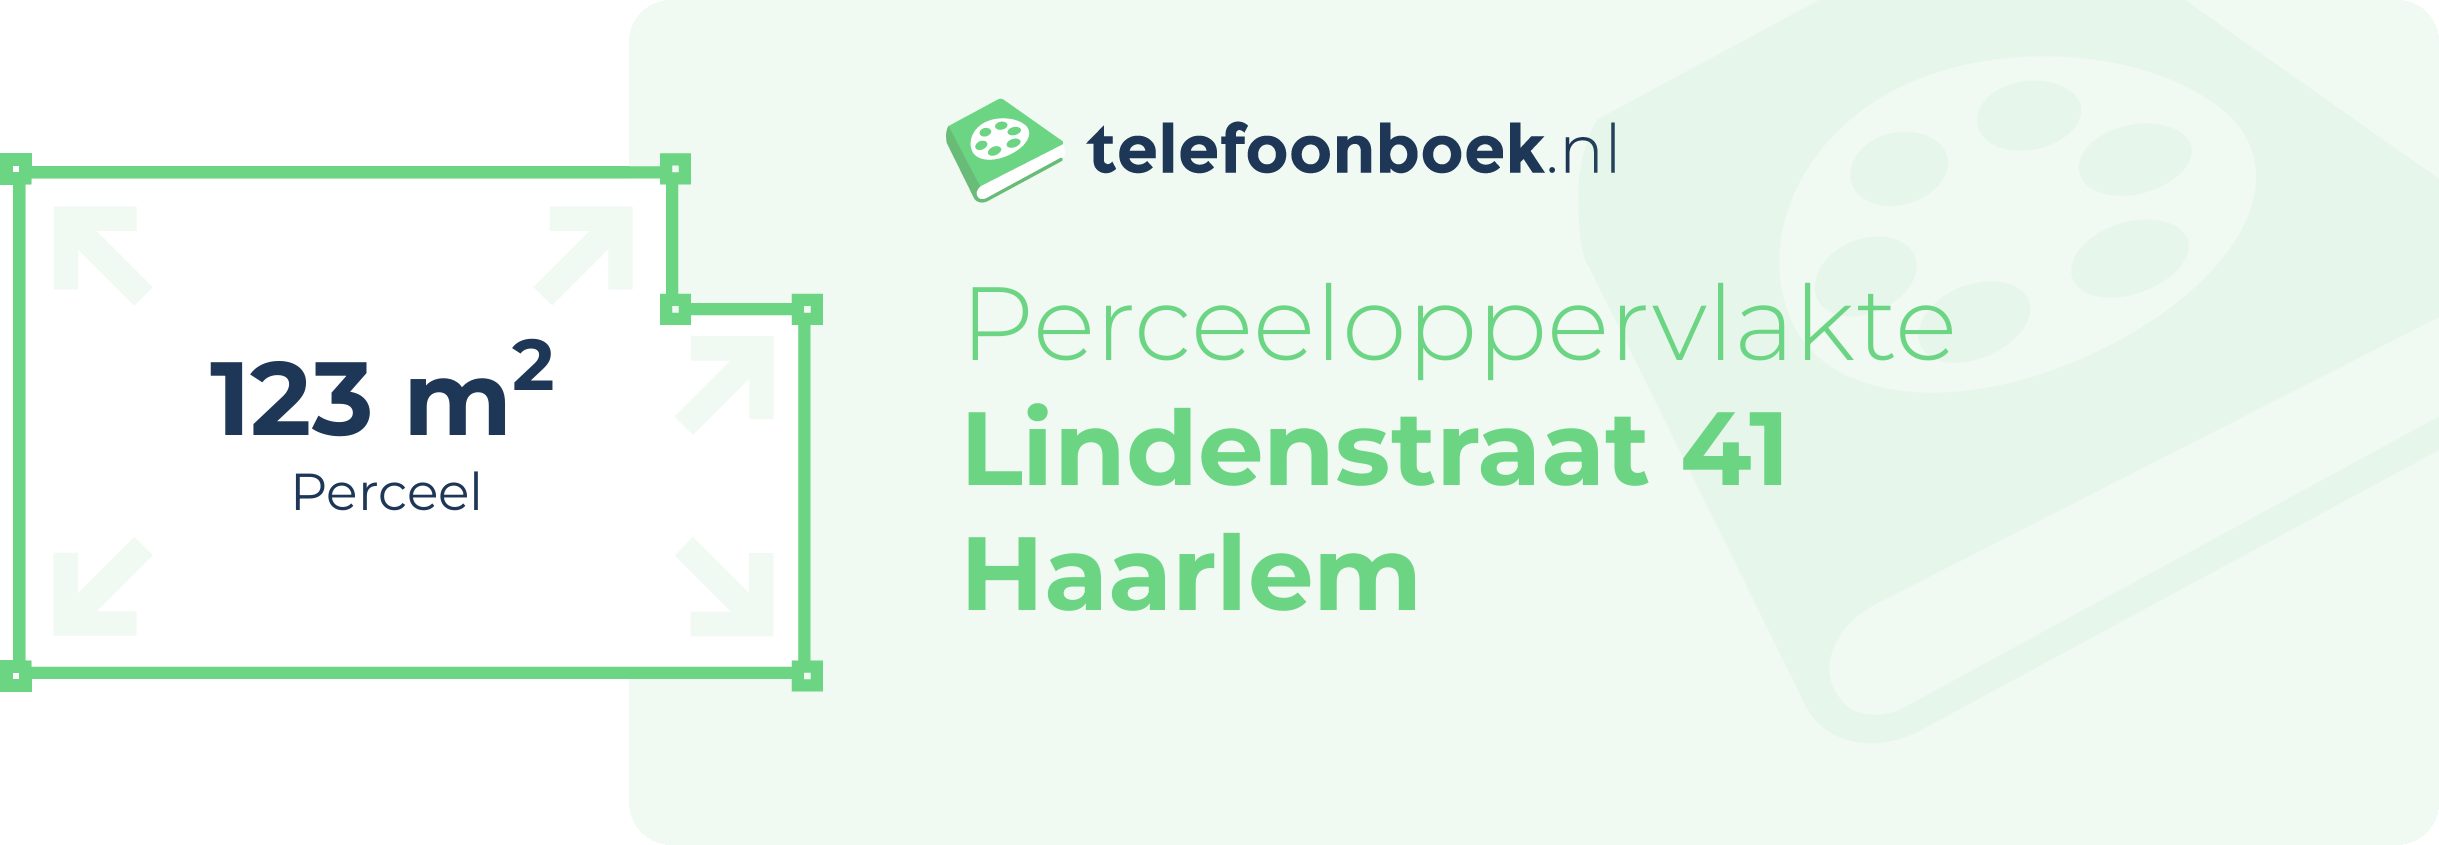 Perceeloppervlakte Lindenstraat 41 Haarlem